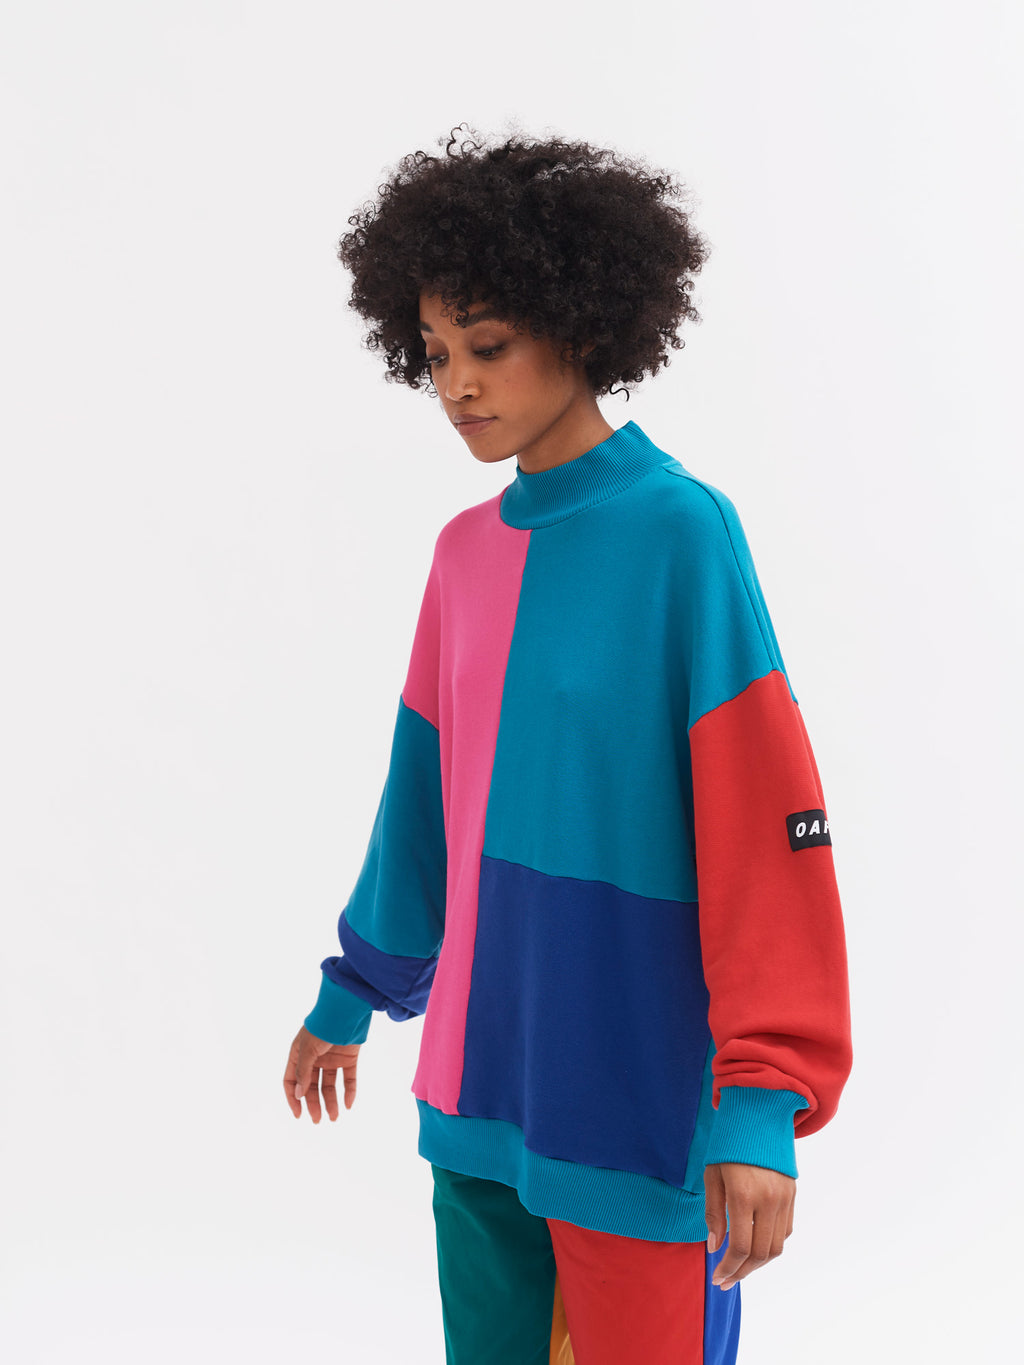 Lazy Oaf Cut & Colour Sweatshirt